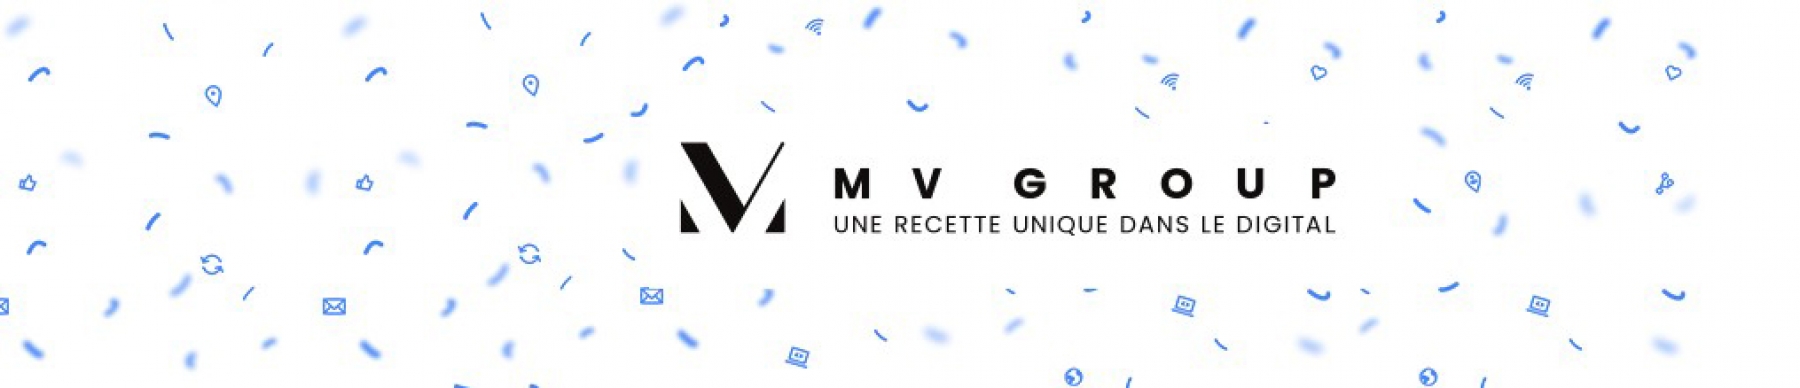 Bannière MV Group